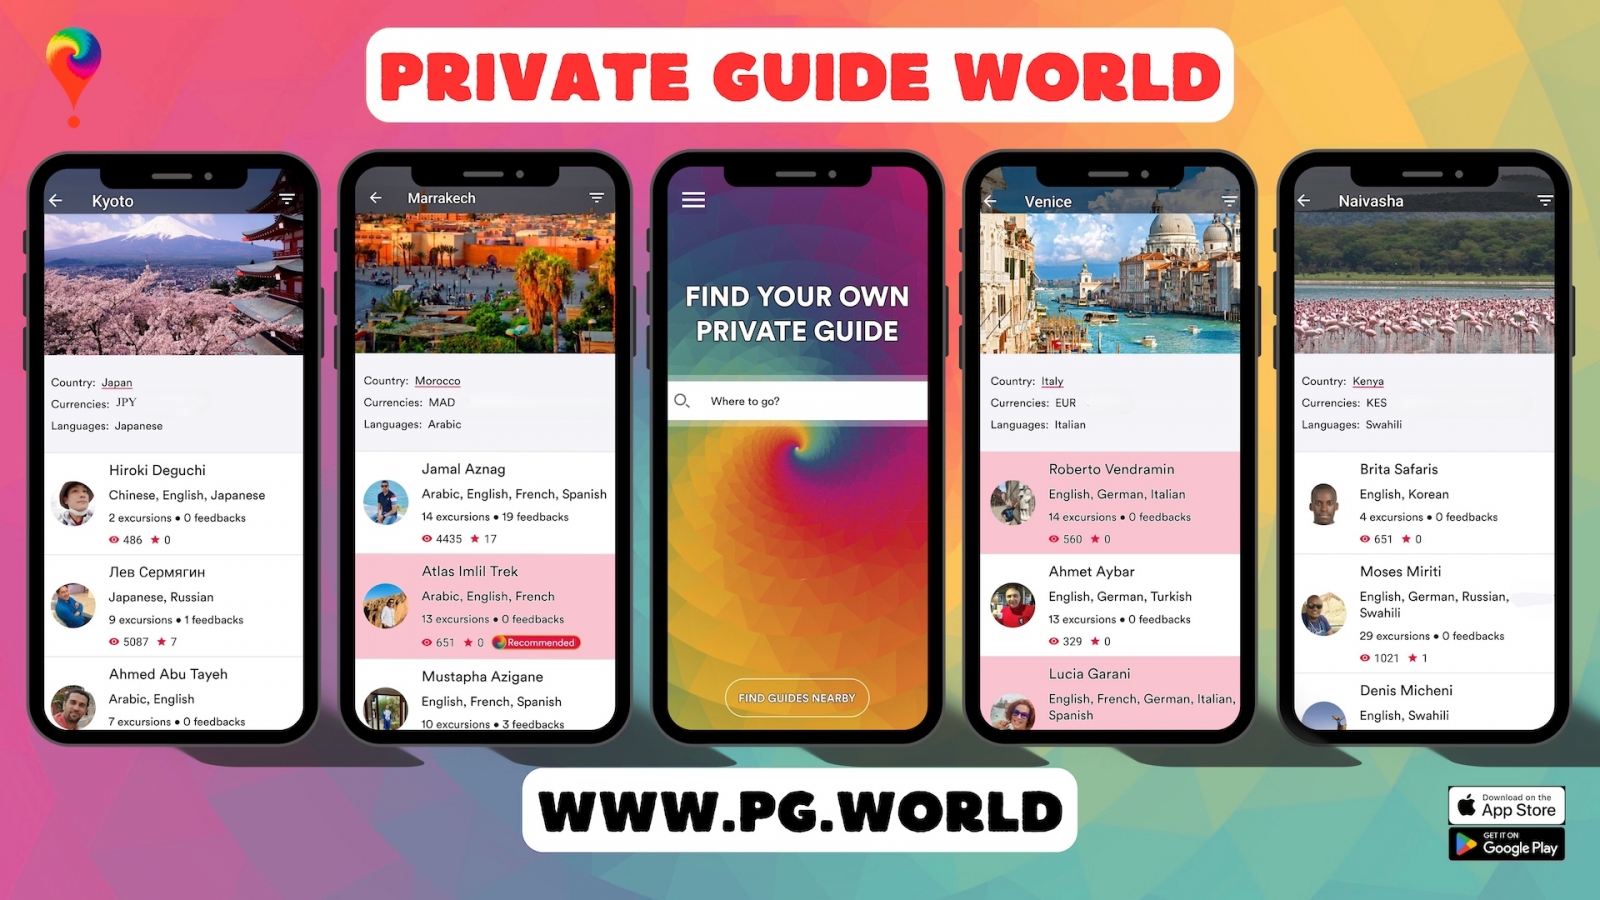 Comment fonctionne le messager intégré du monde du guide touristique privé ?